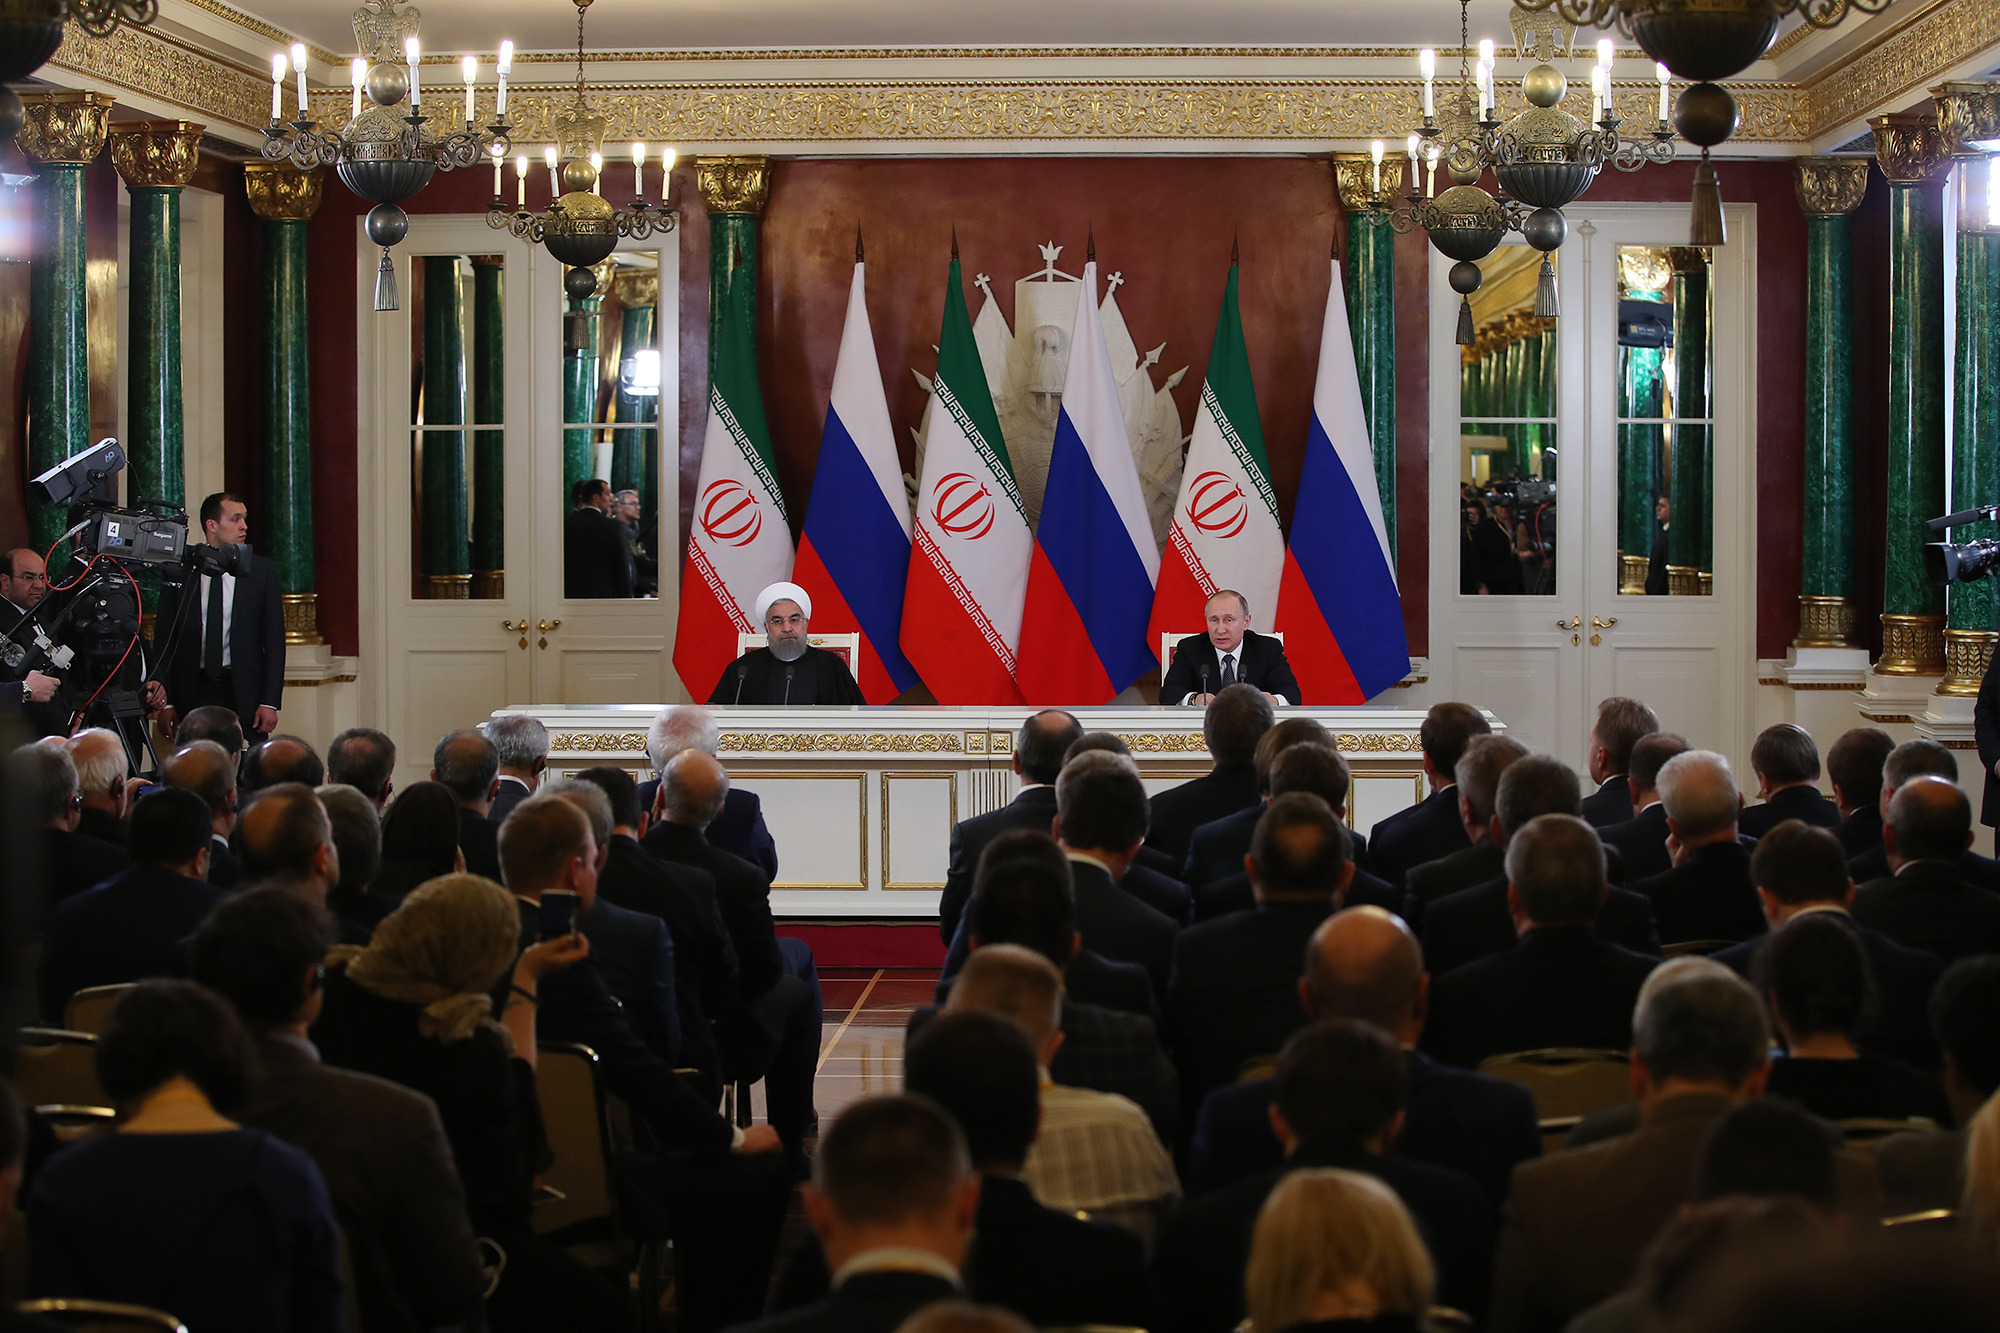 دکتر روحانی در نشست خبری مشترک با رییس جمهور روسیه: روابط ایران و روسیه از سطح روابط عادی فراتر رفته است